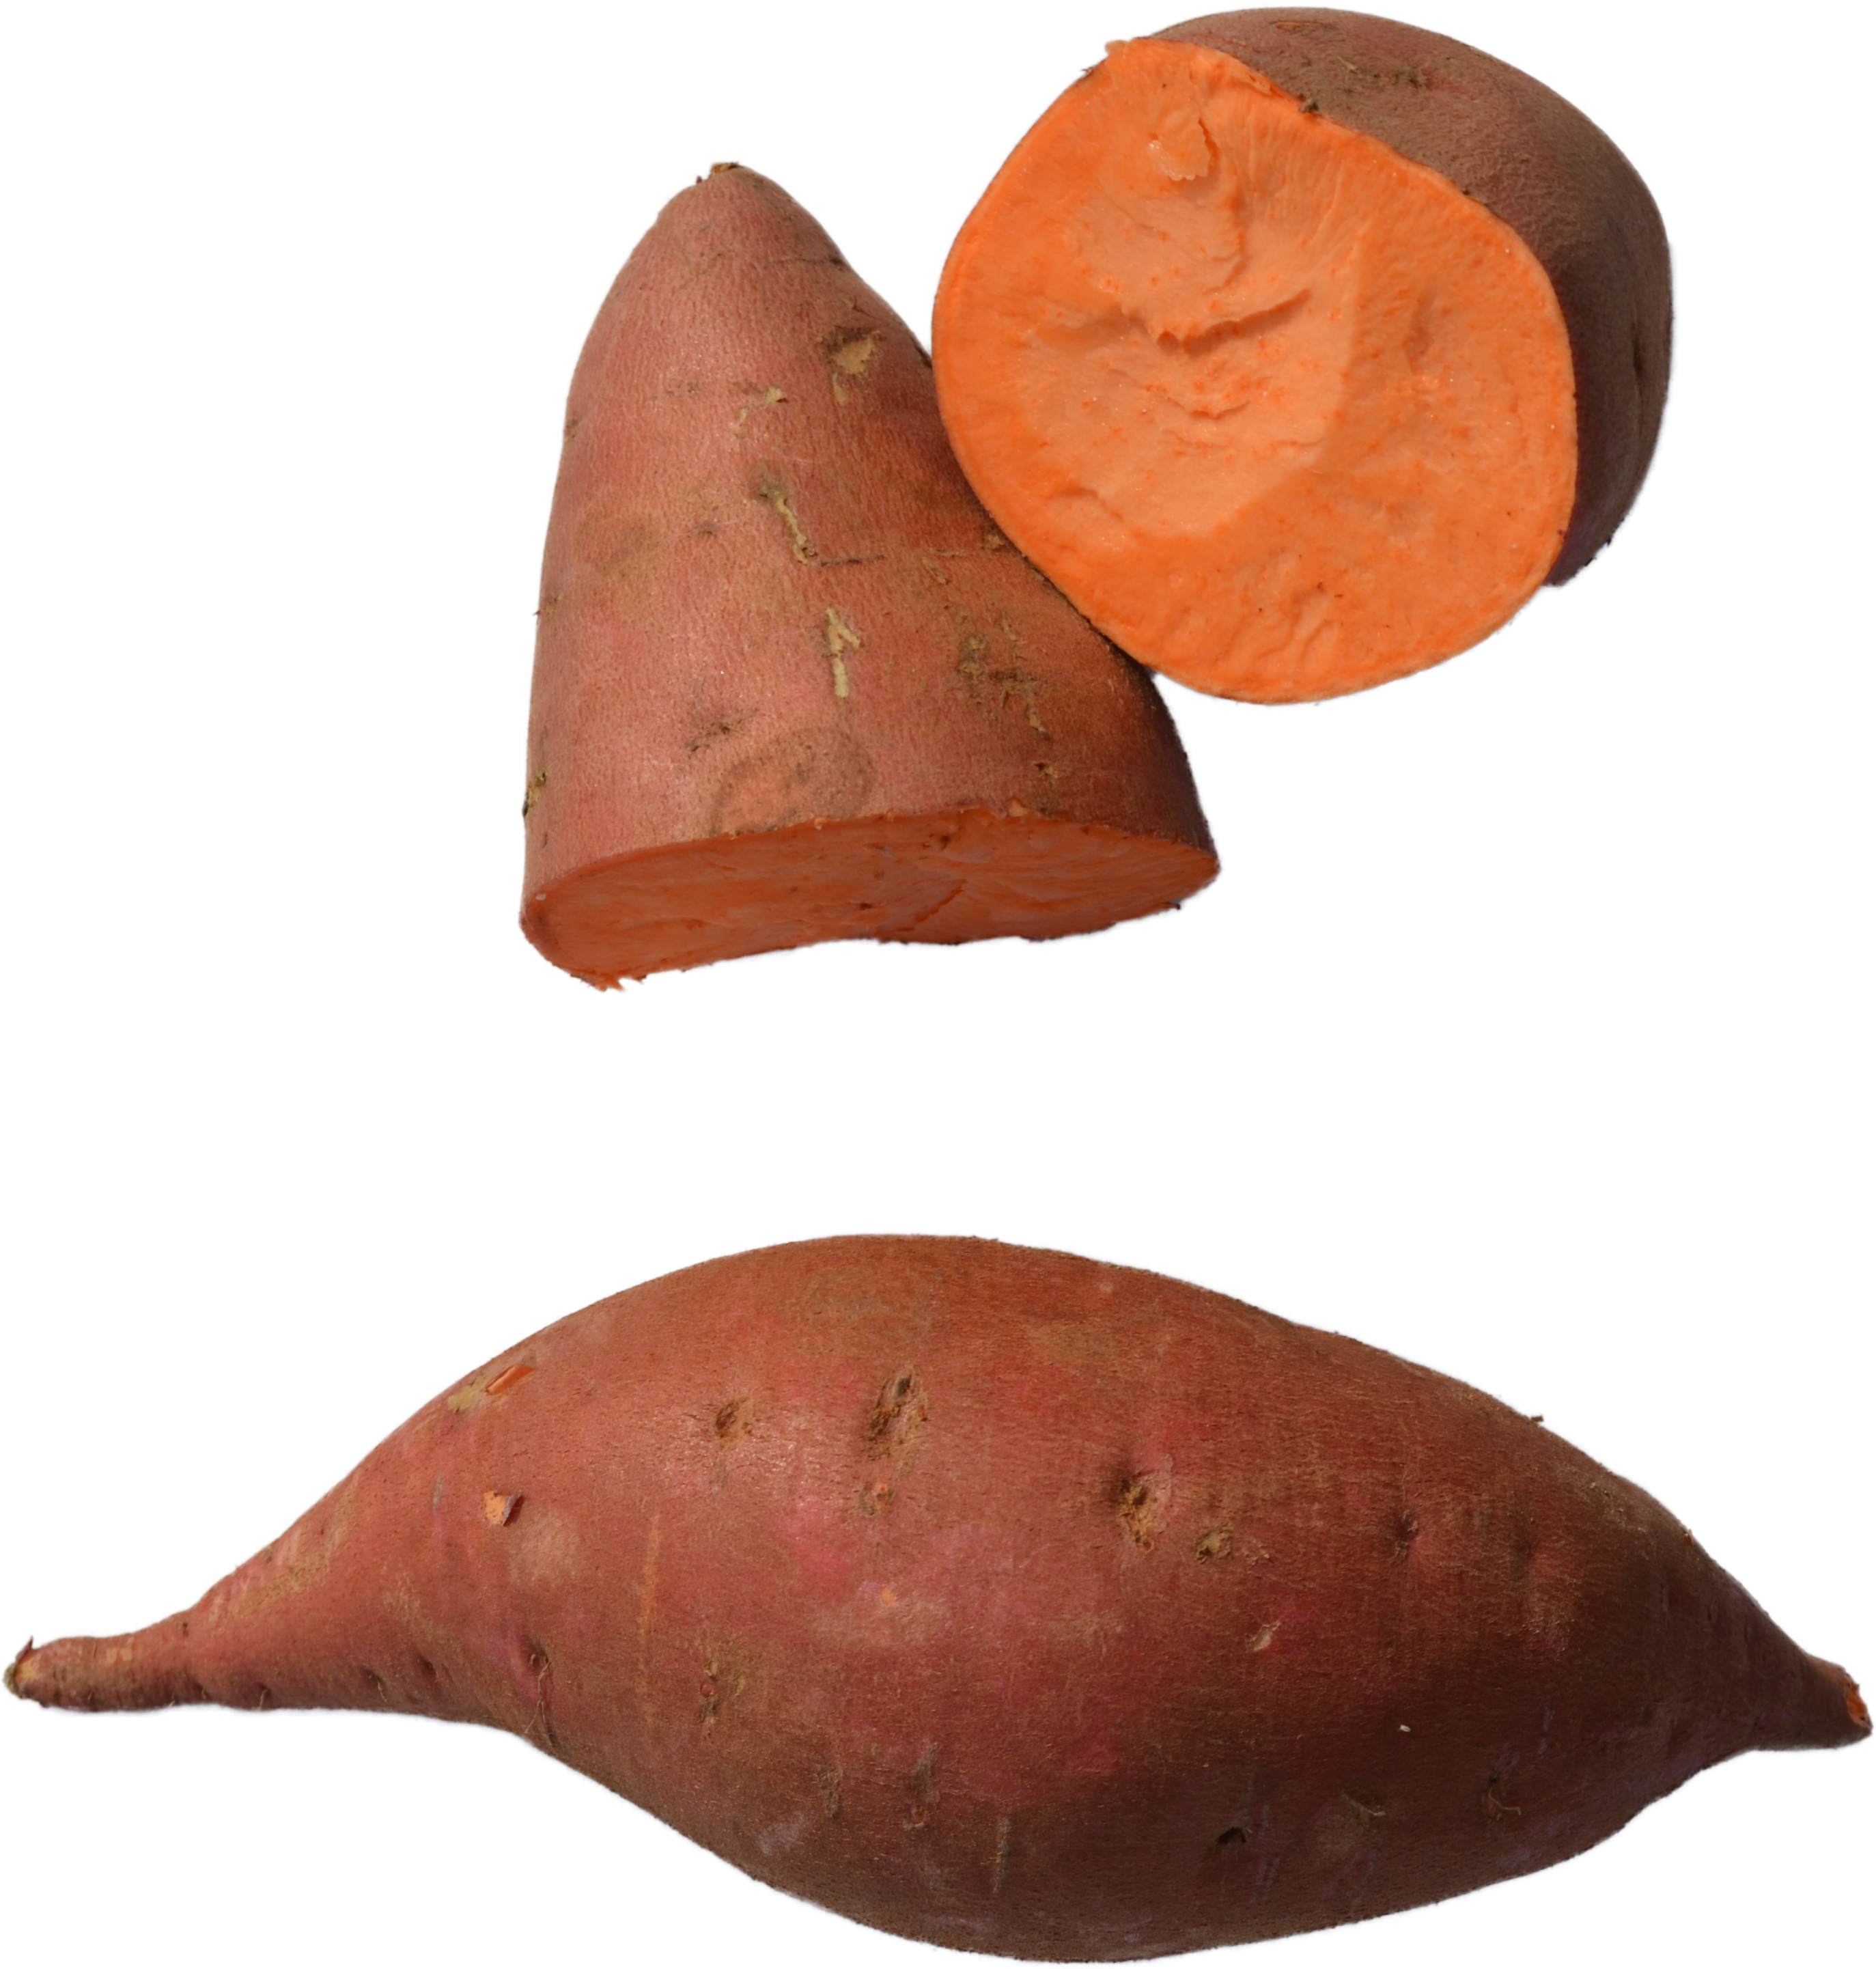 红薯